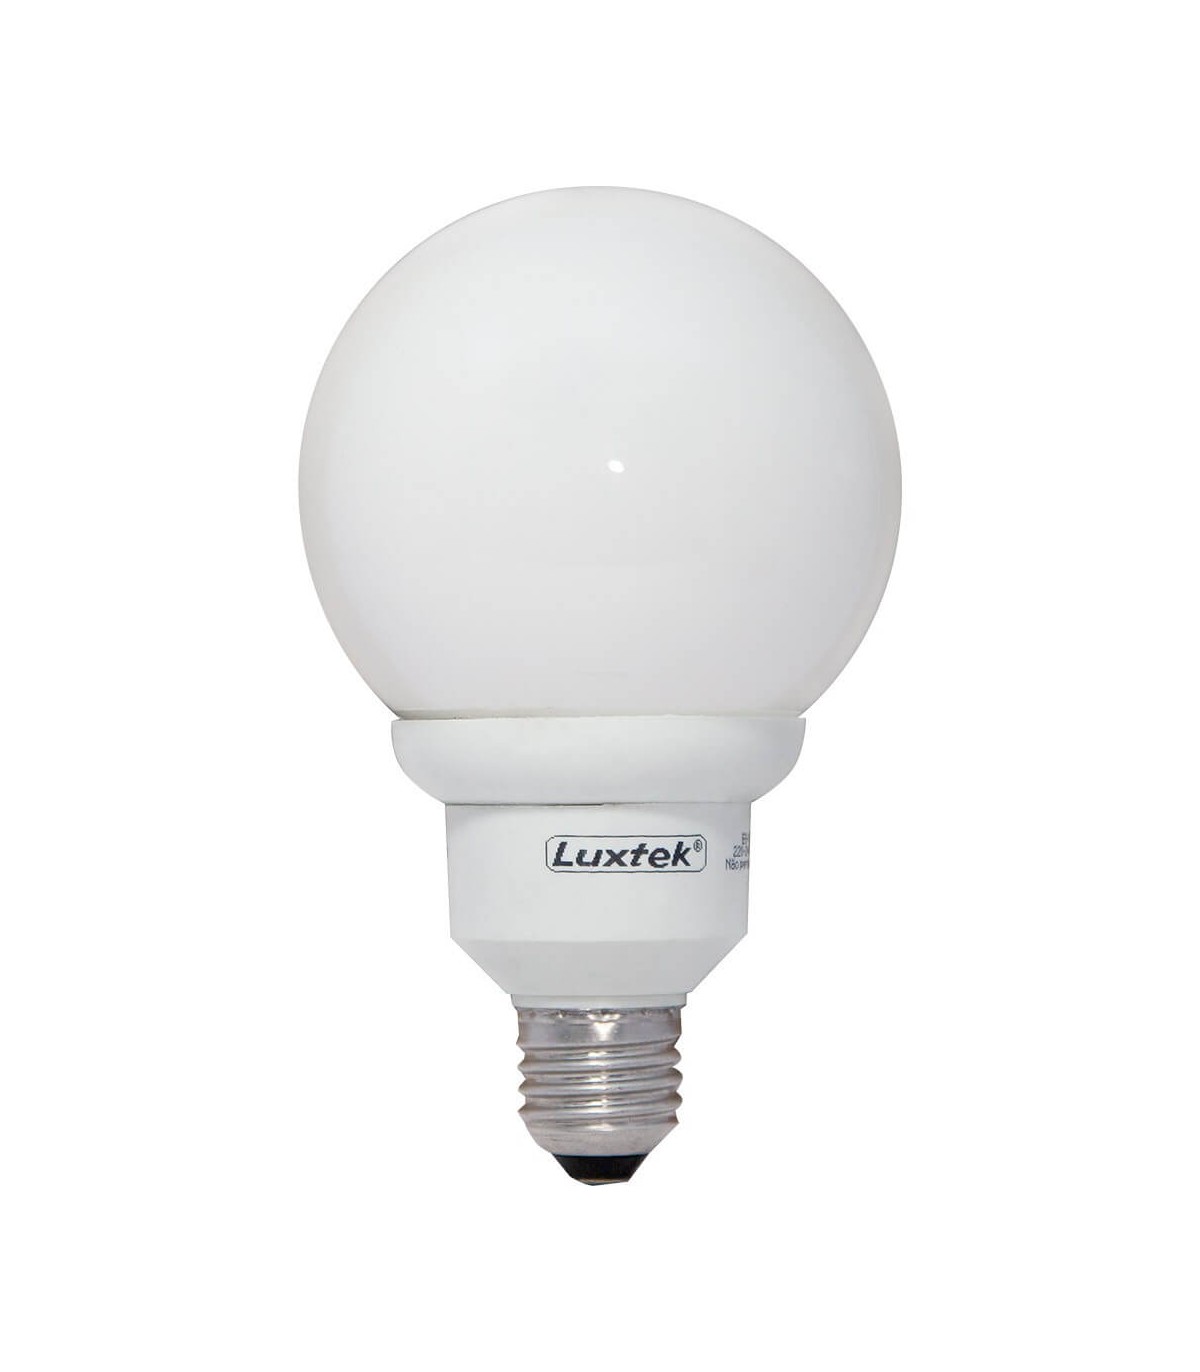 Ampoule LED sphérique E27. Faites des économies avec la LED